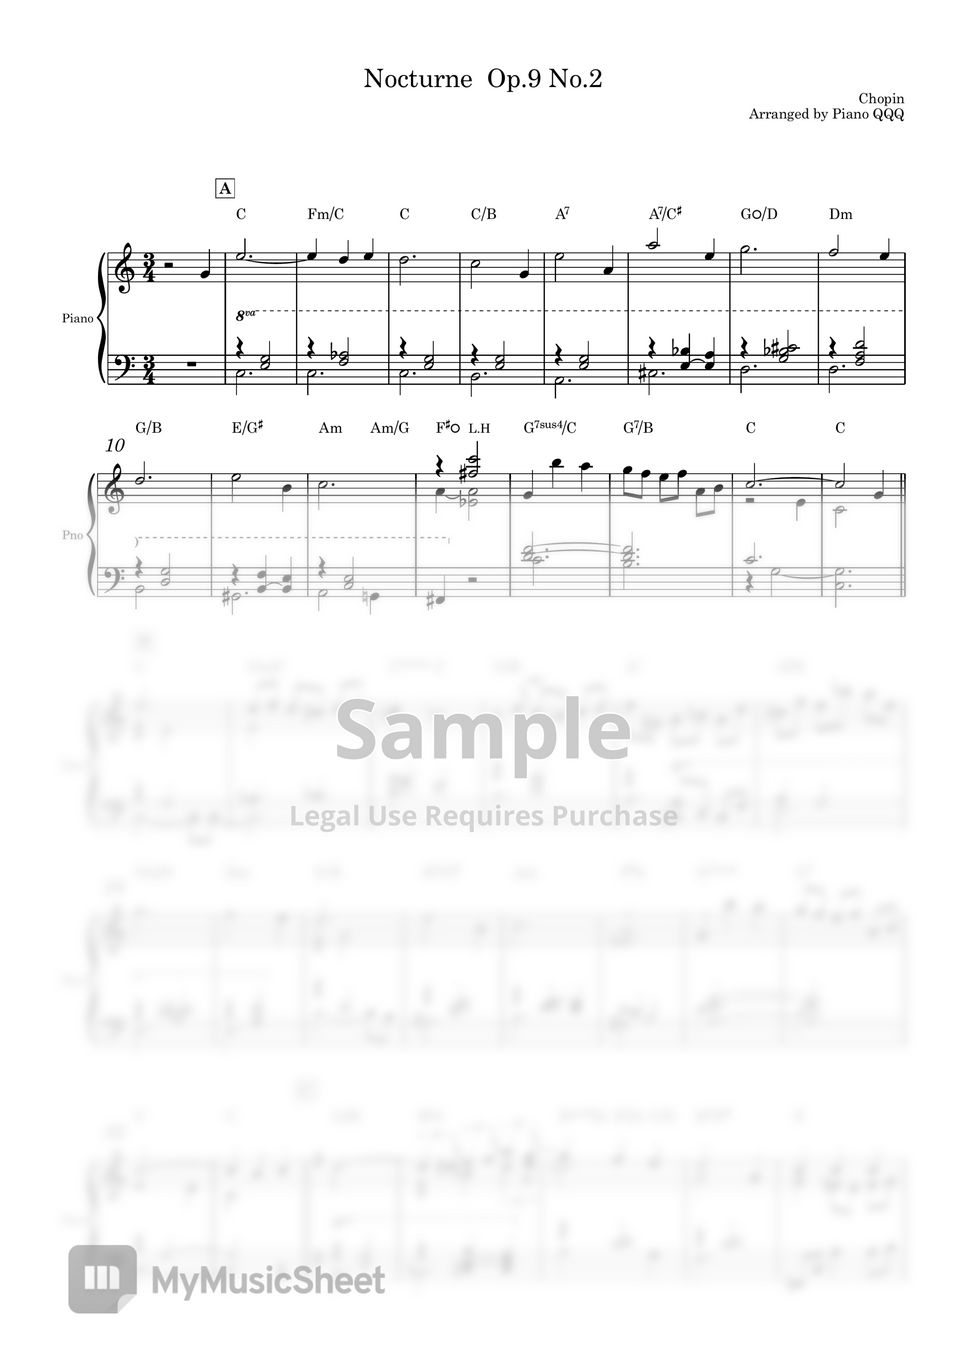 Chopin - Nocturne Op.9 No.2 (Piano Solo) by Piano QQQ